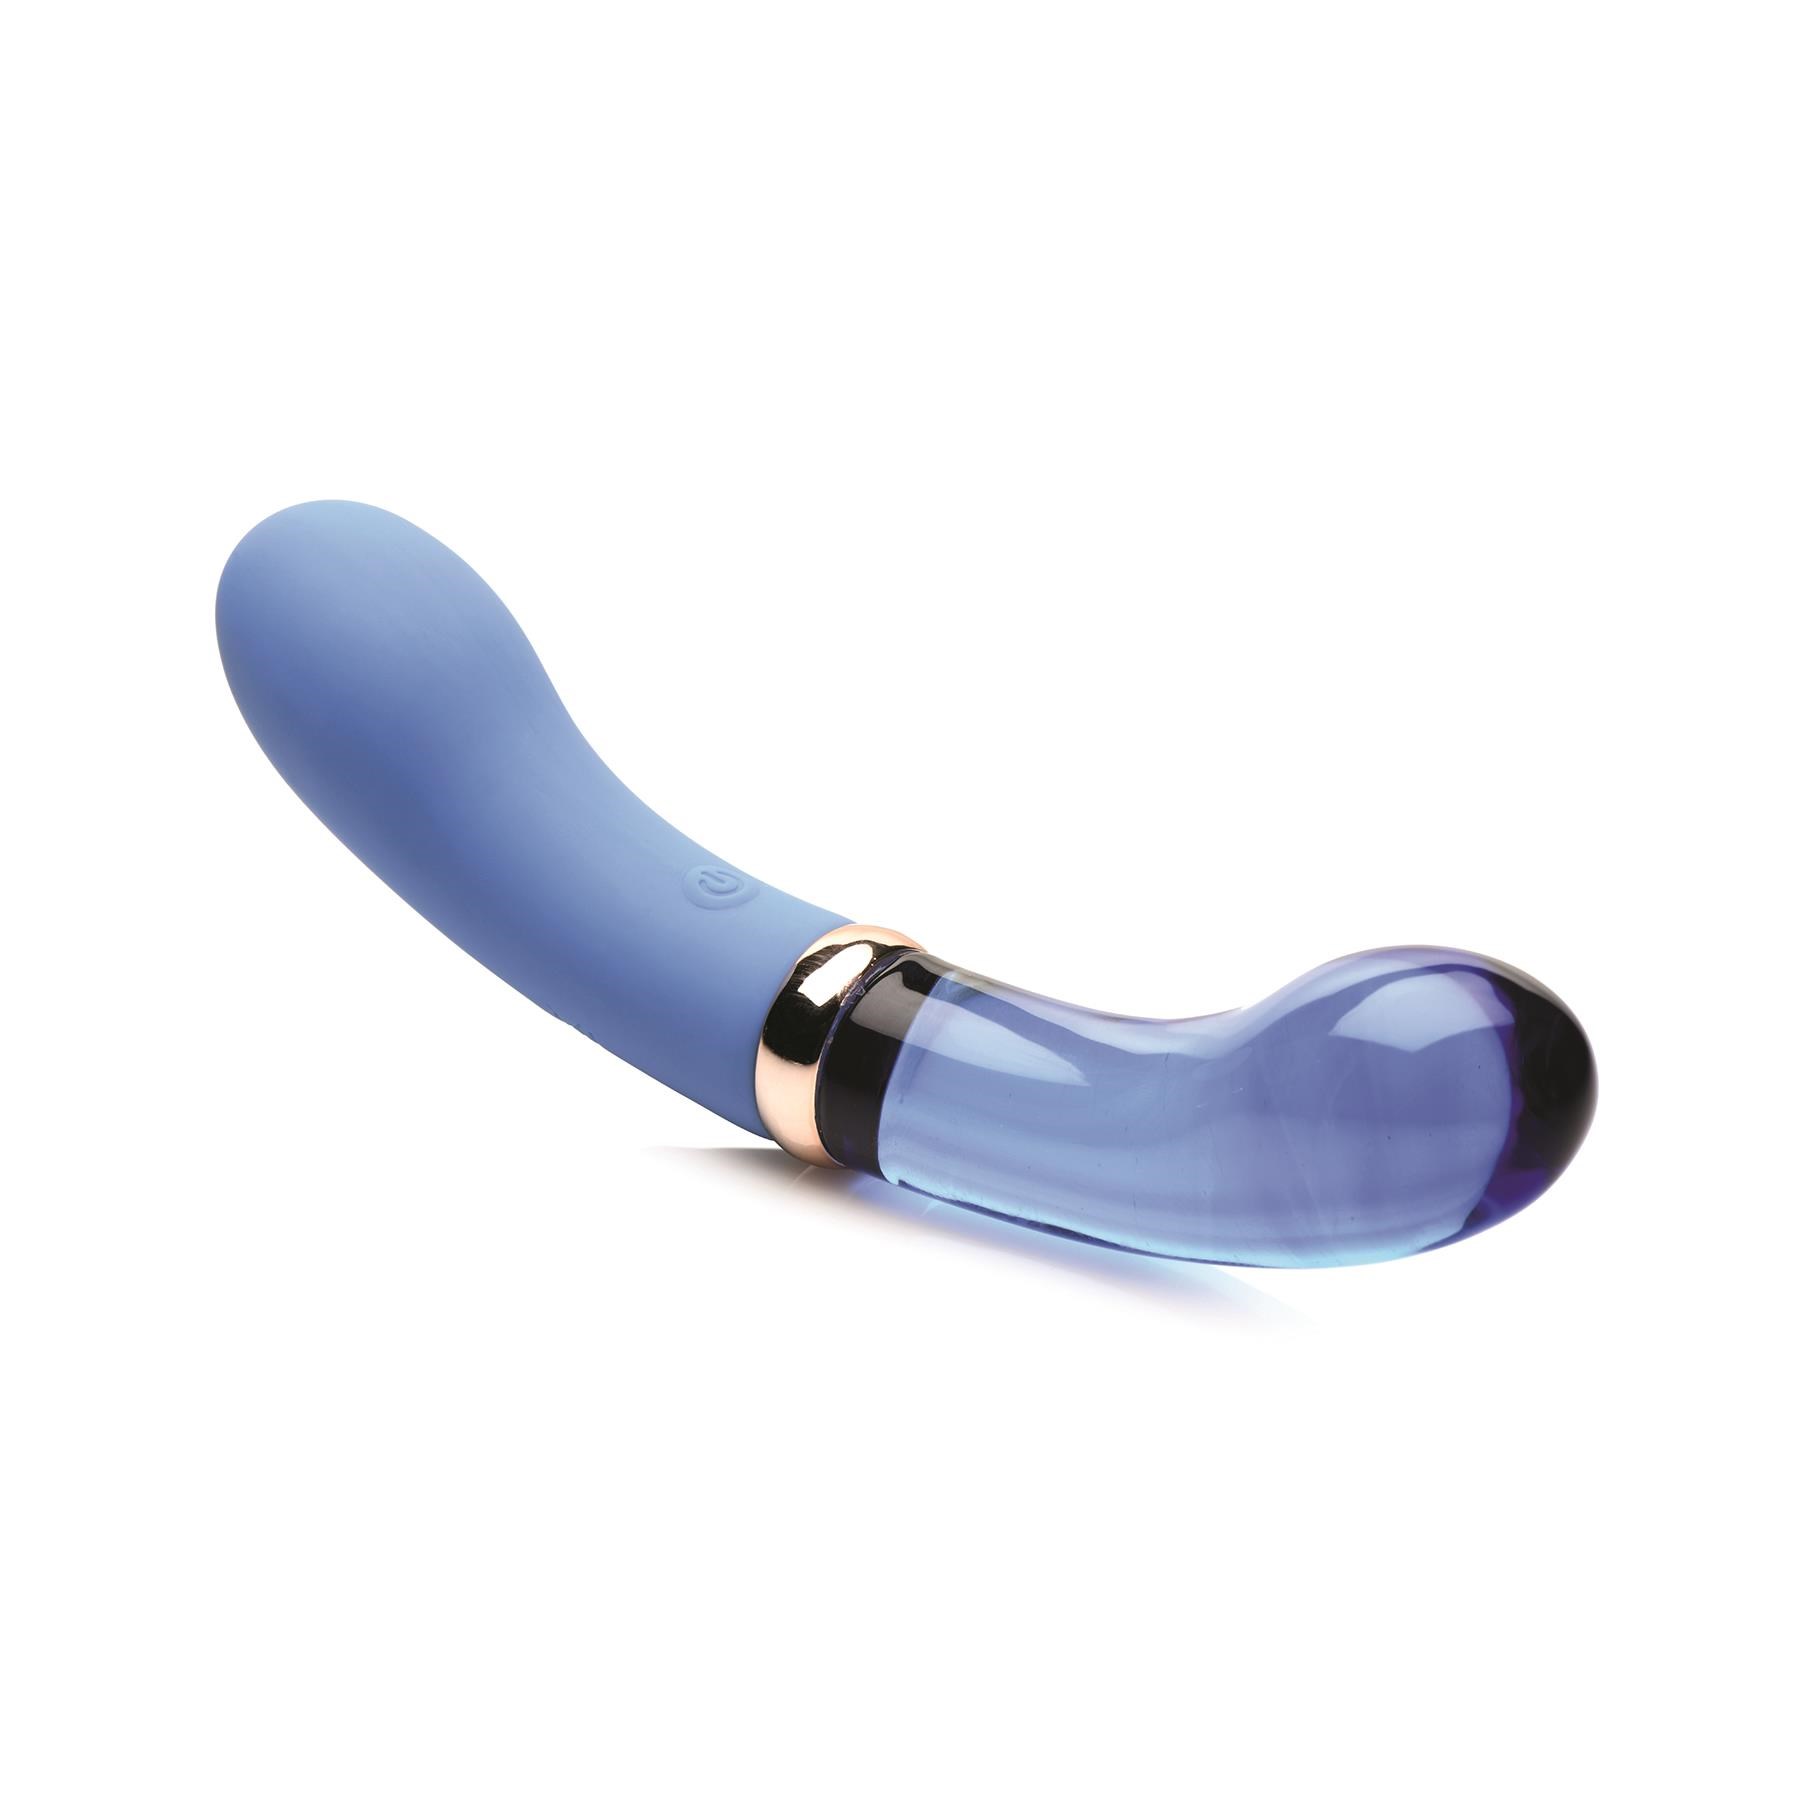 Prisms Vibra-Glass Bleu Dual Ended G-Spot Vibrator - Product Shot #3